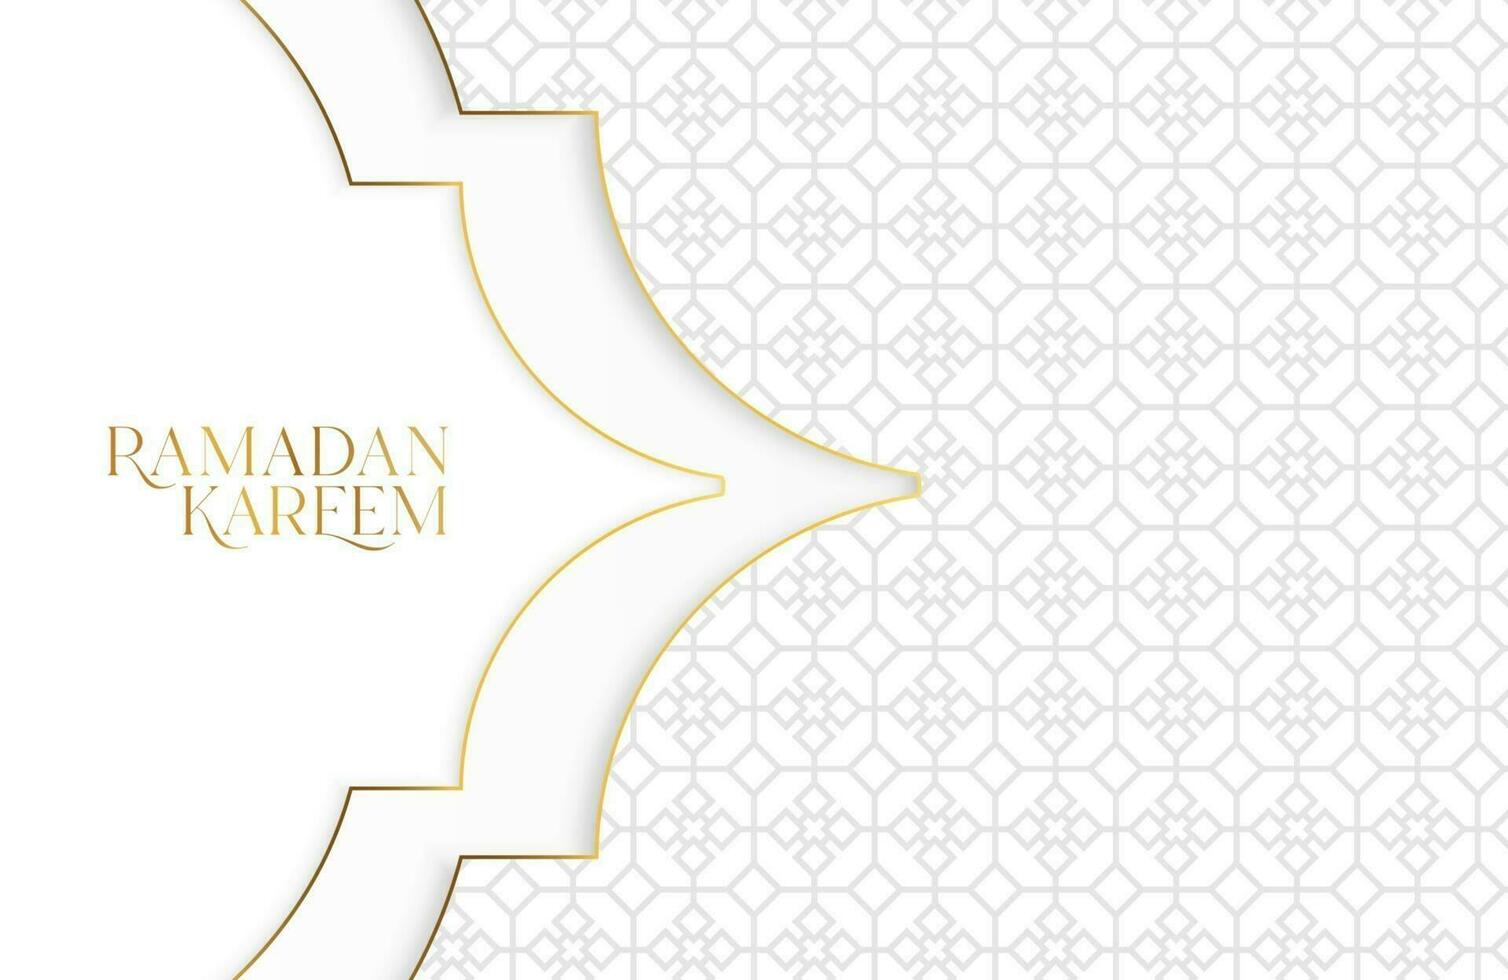 fond de ramadan kareem avec papier blanc découpé illustration vectorielle de forme géométrique pour les célébrations du mois sacré islamique vecteur